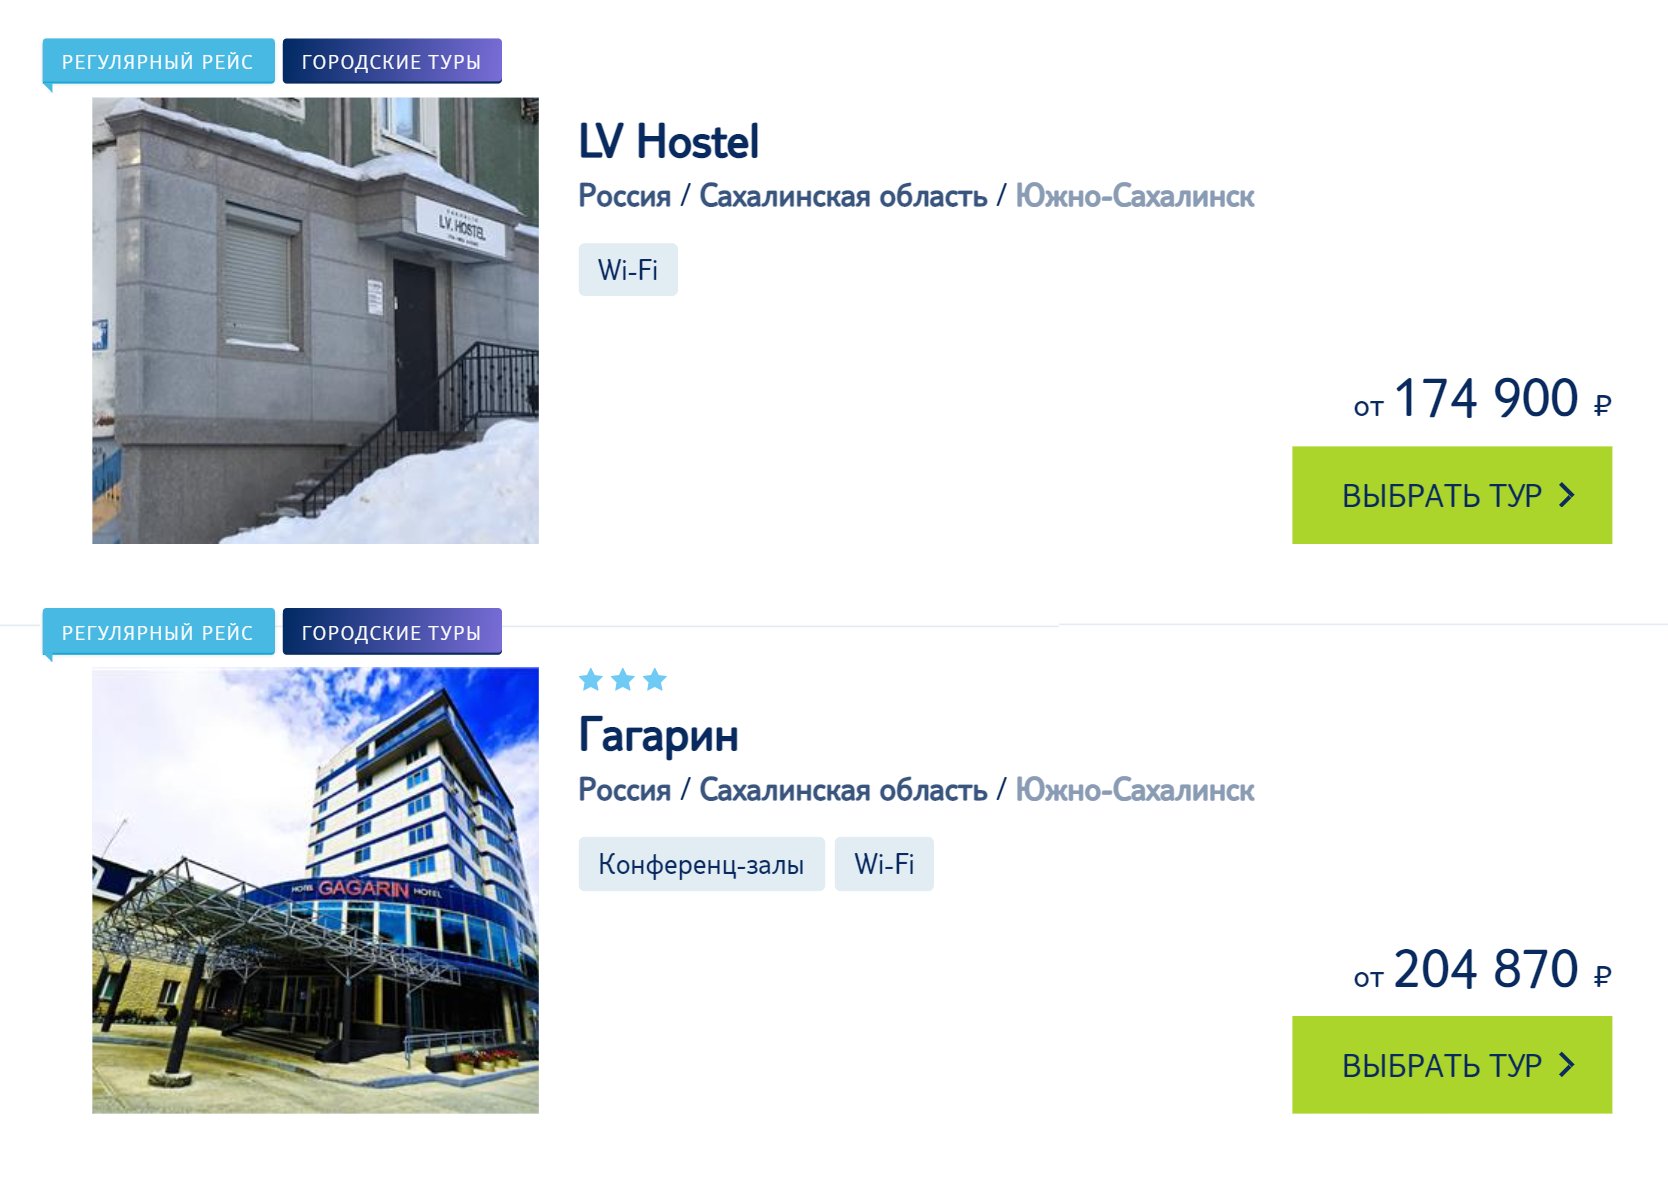 Сейчас стоимость недельного тура на одного человека на Сахалин из Москвы стартует от 170 тысяч рублей летом